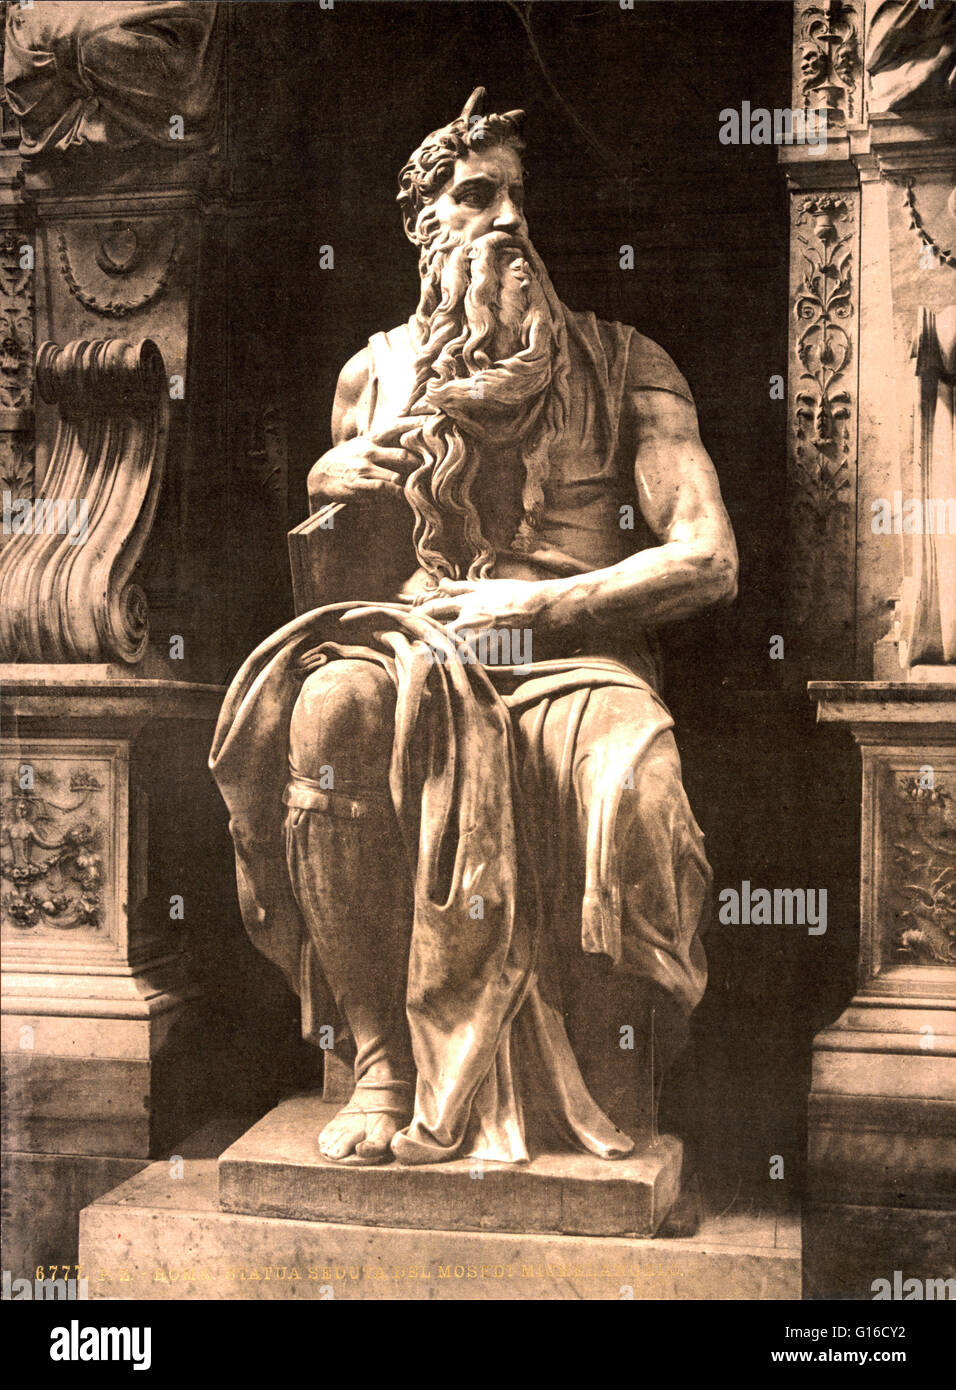 Der Moses ist eine Skulptur von der italienischen Hochrenaissance Künstler Michelangelo Buonarroti, untergebracht in der Kirche San Pietro in Vincoli in Rom. Im Auftrag von Papst Julius II für sein Grab im Jahre 1505, zeigt es die biblische Figur Moses mit Hörnern auf seinem hea Stockfoto